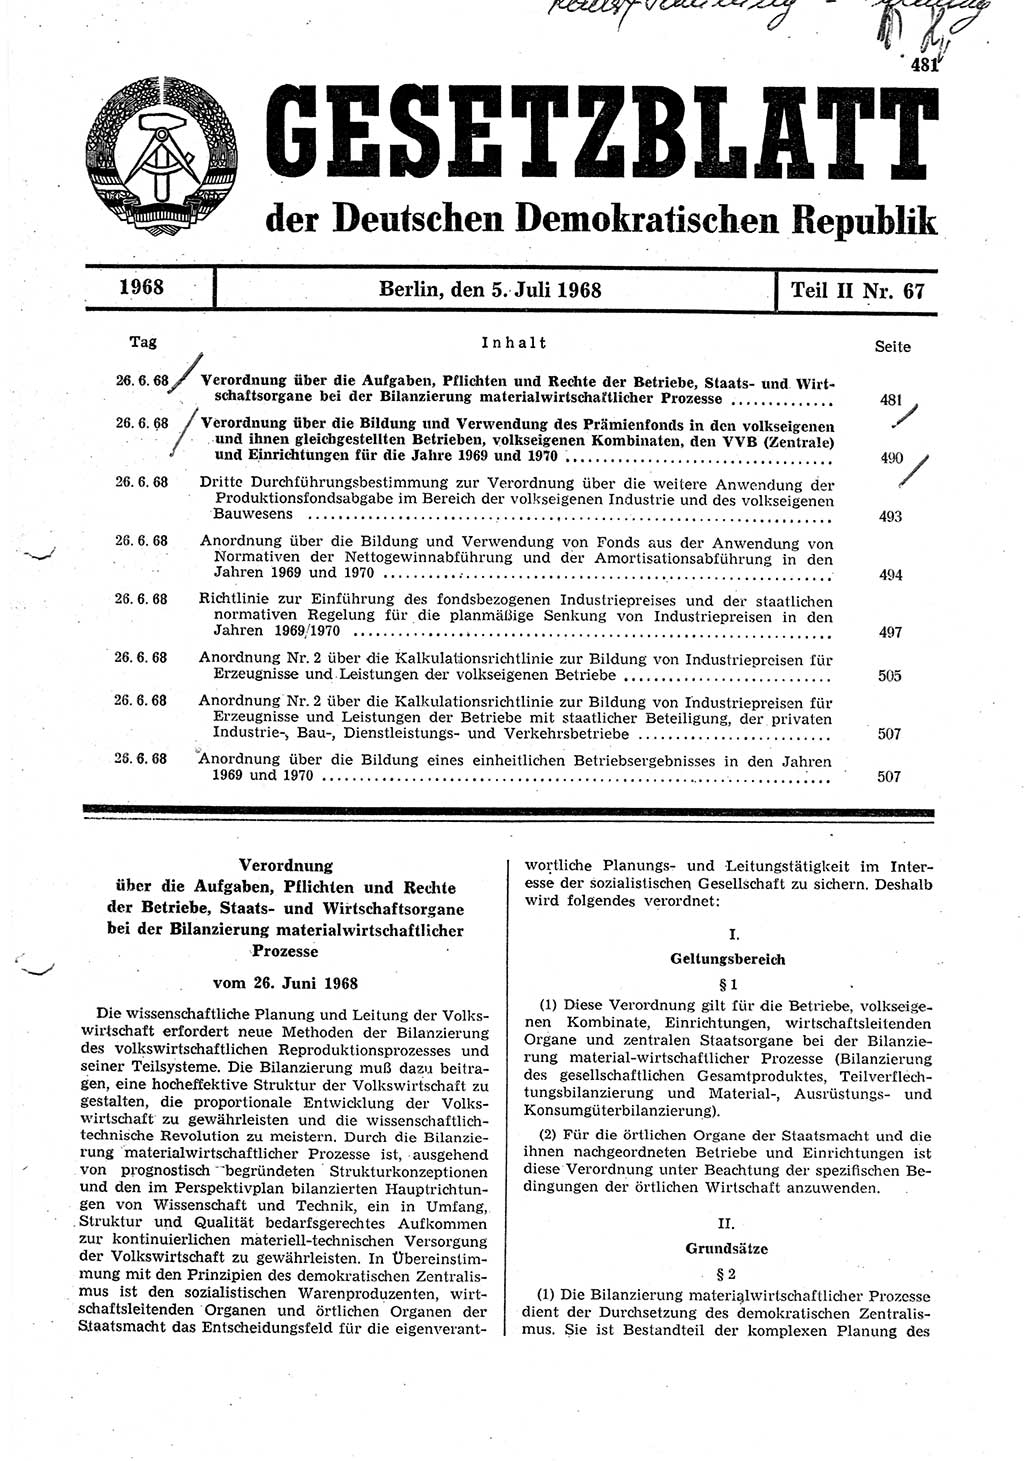 Gesetzblatt (GBl.) der Deutschen Demokratischen Republik (DDR) Teil ⅠⅠ 1968, Seite 481 (GBl. DDR ⅠⅠ 1968, S. 481)